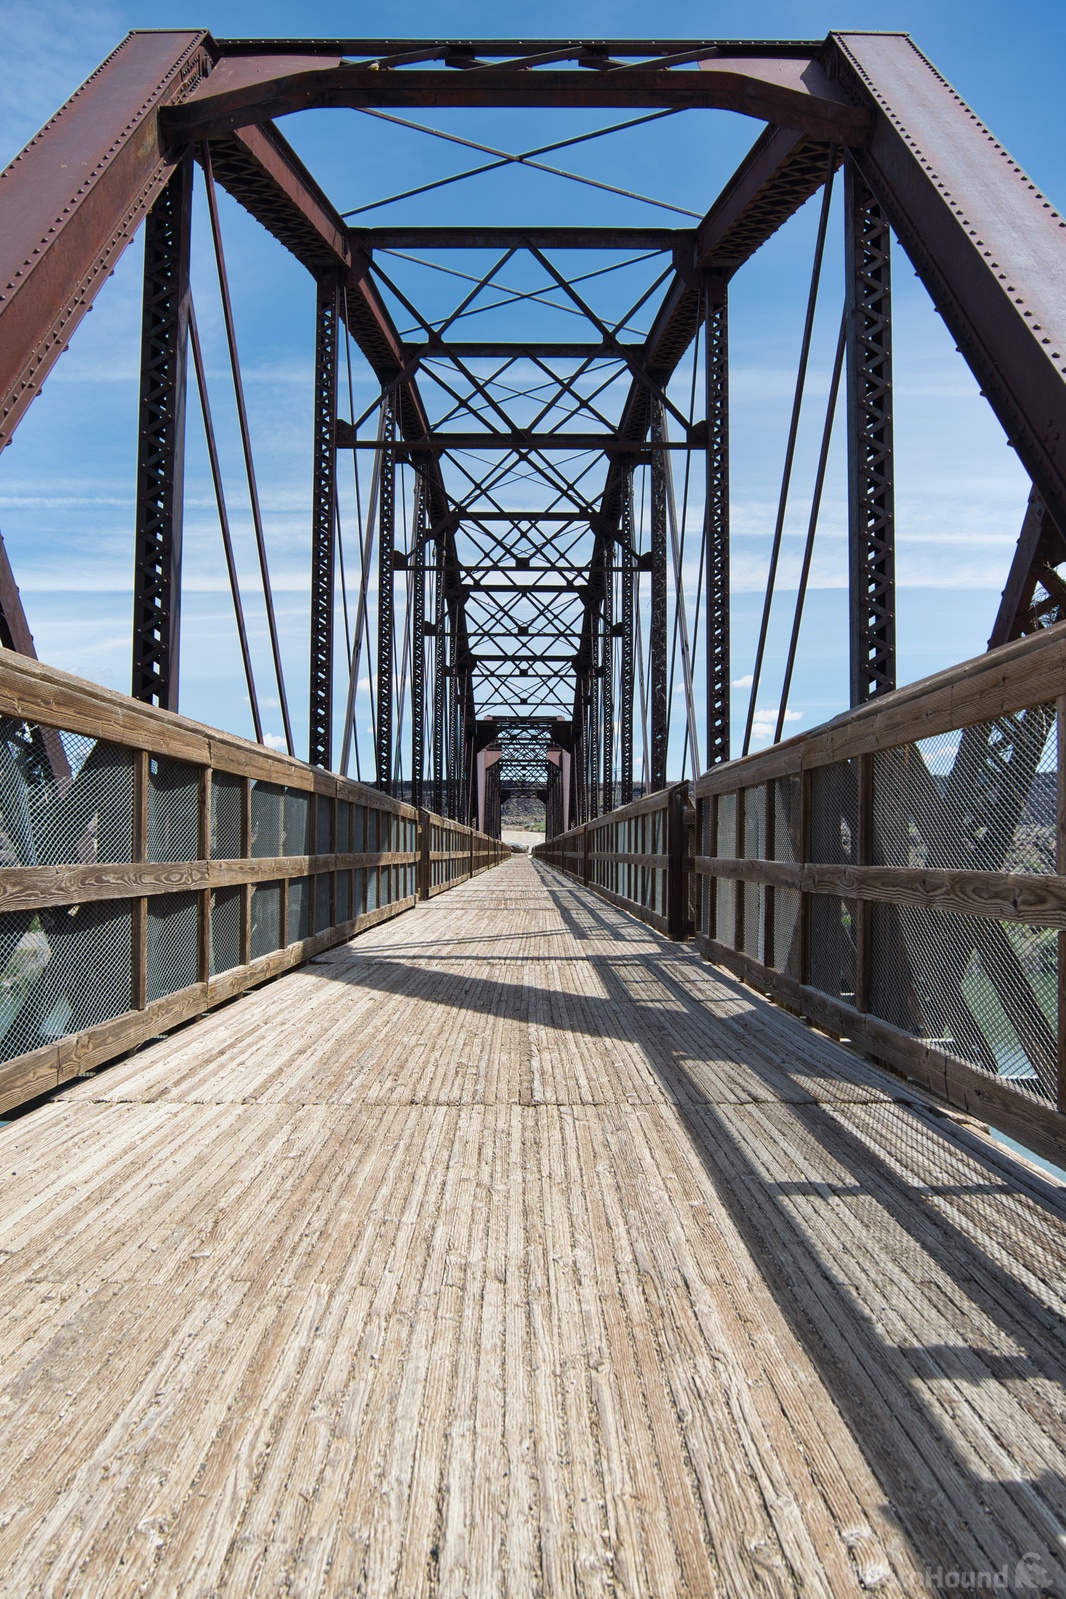 Image of Guffey Railroad Bridge by Steve West